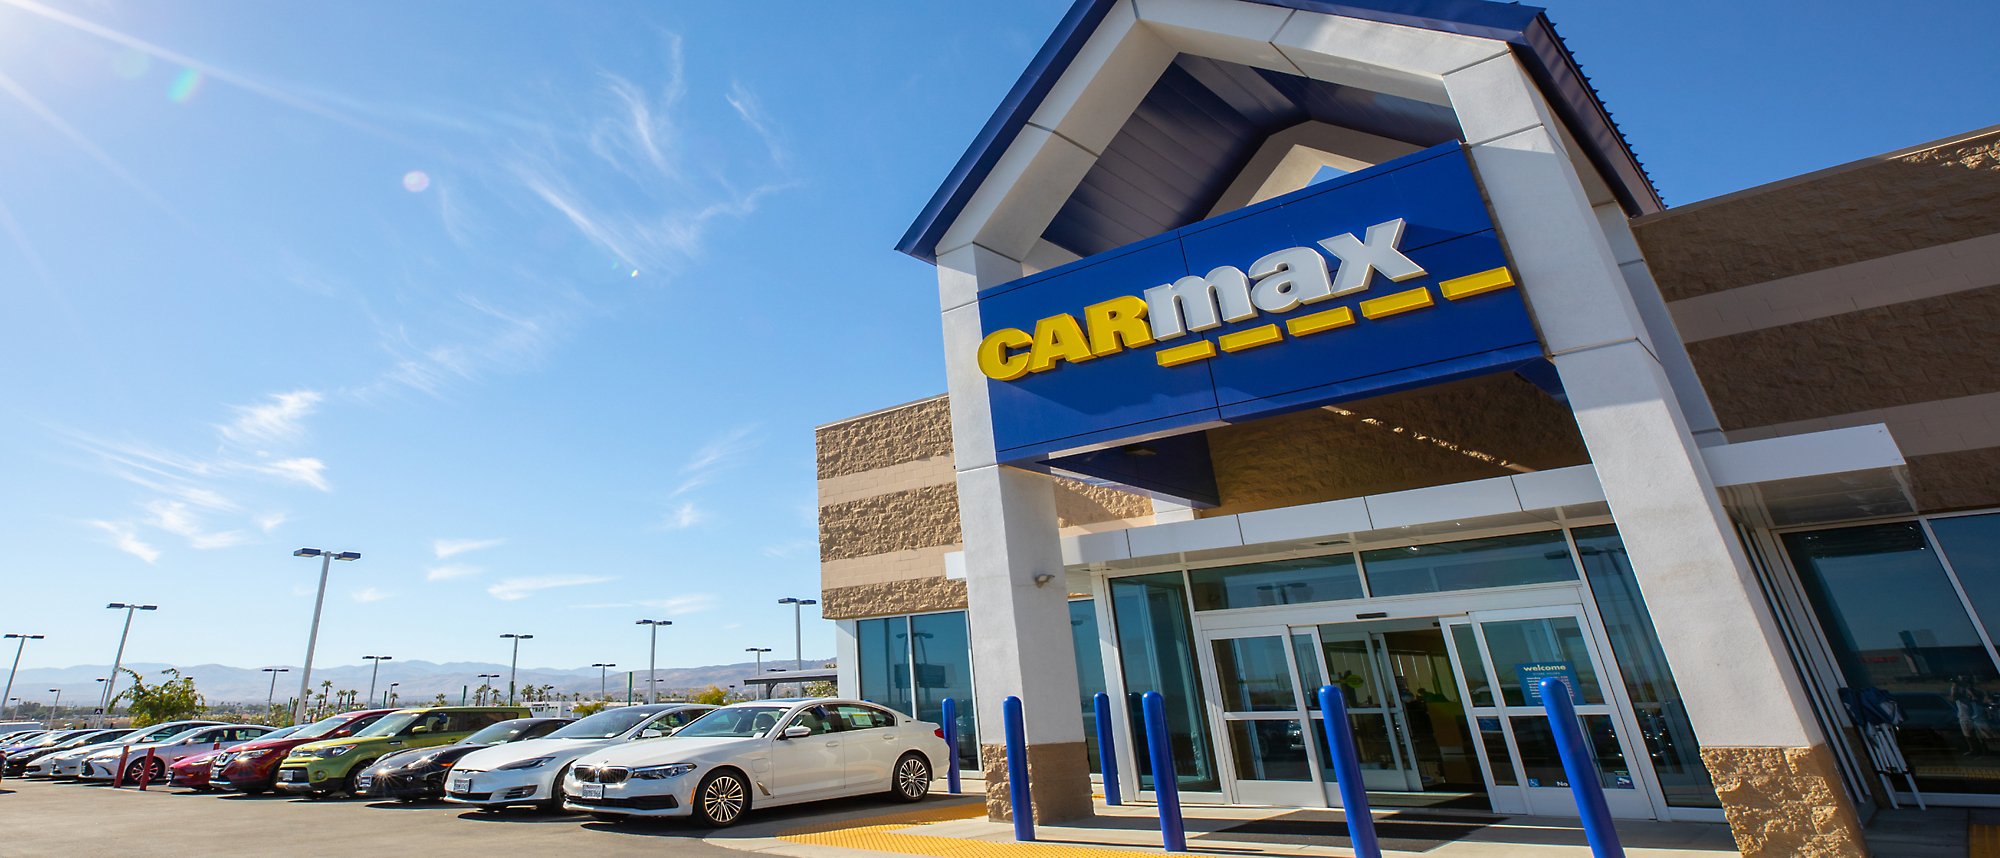 Ein Bild des Carmax-Gebäudes mit vielen Autos, die draußen geparkt sind